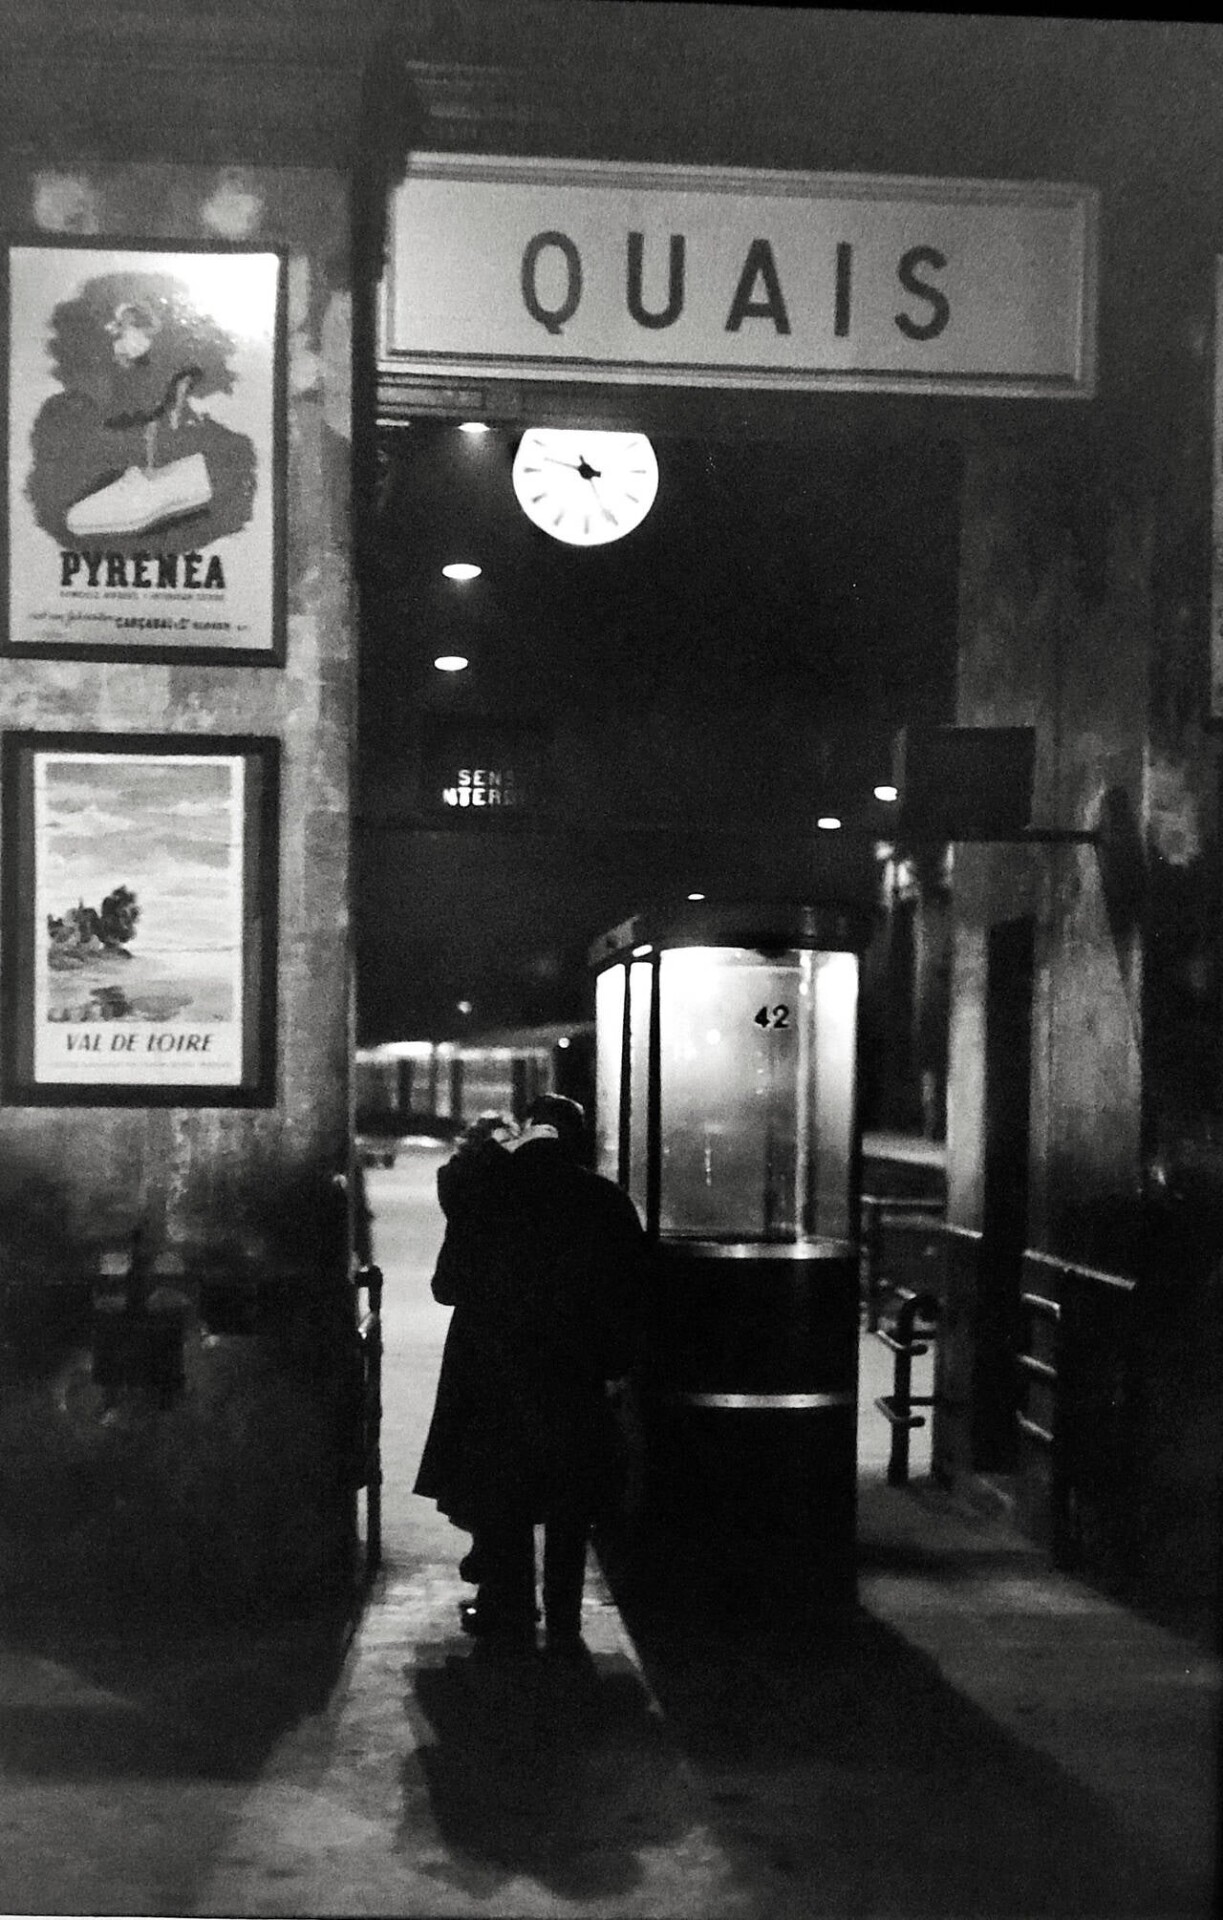 Железнодорожный вокзал, Париж, 1958. Фотограф Анри Картье-Брессон